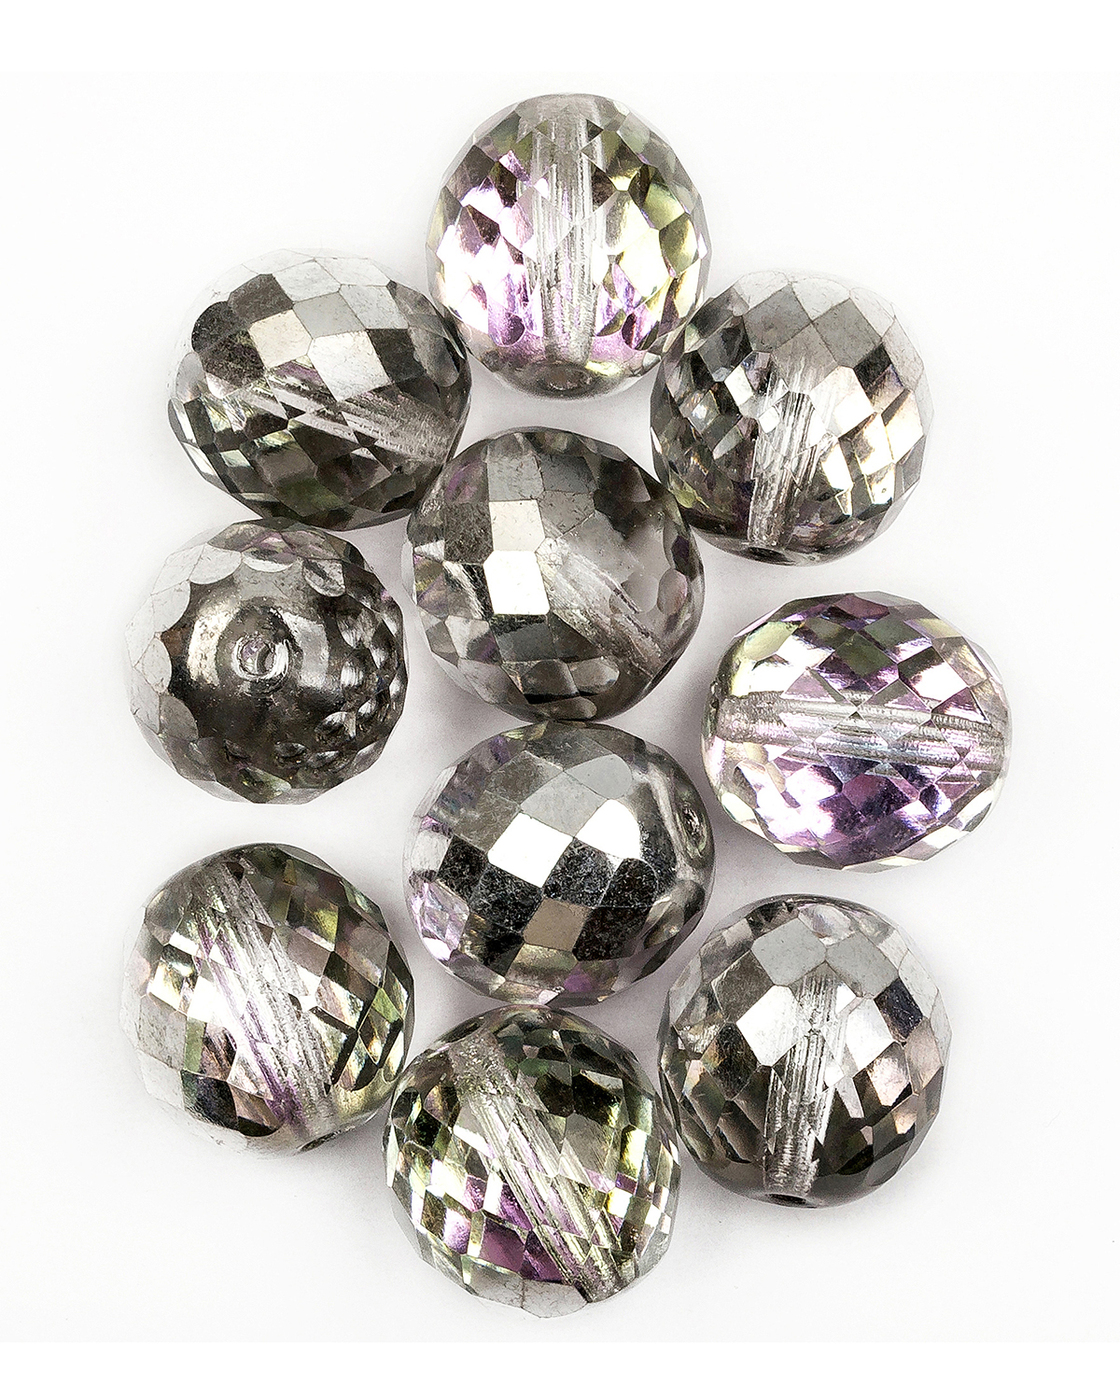 Стеклянные чешские бусины Fire polished beads ганеные круг 16 мм Crystal Vitrail Light 3шт